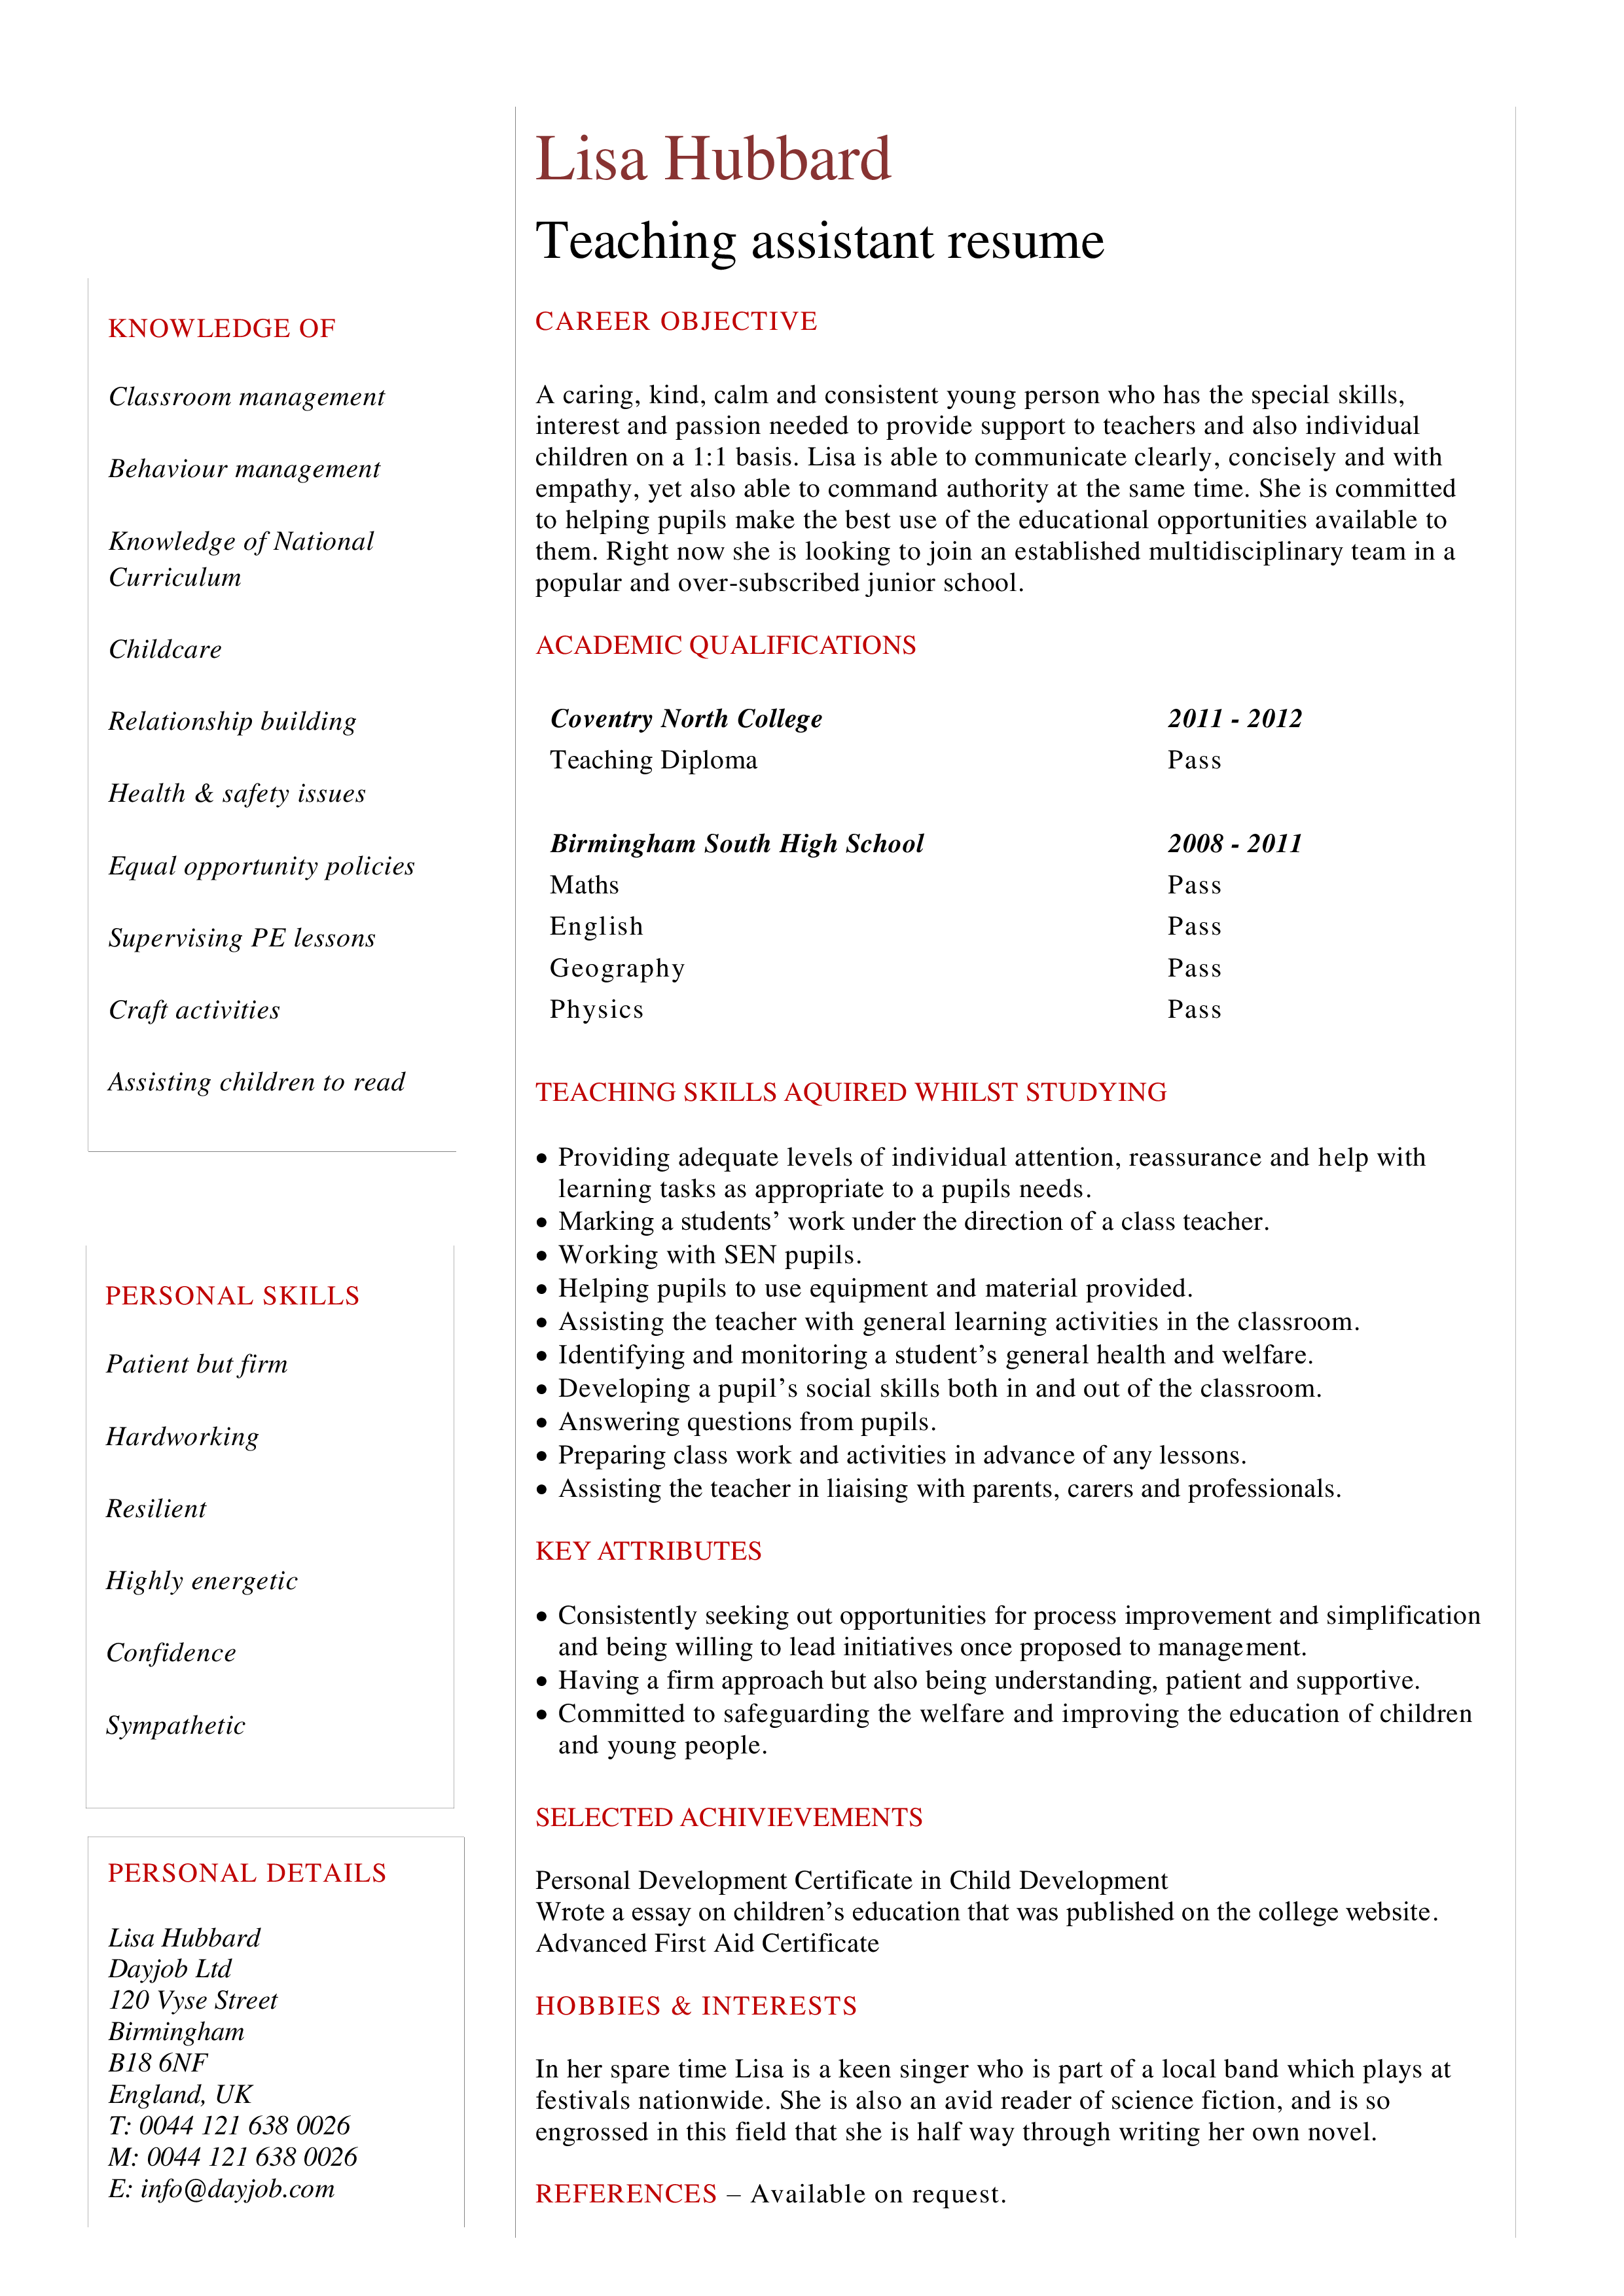 Resume teaching assistant job description